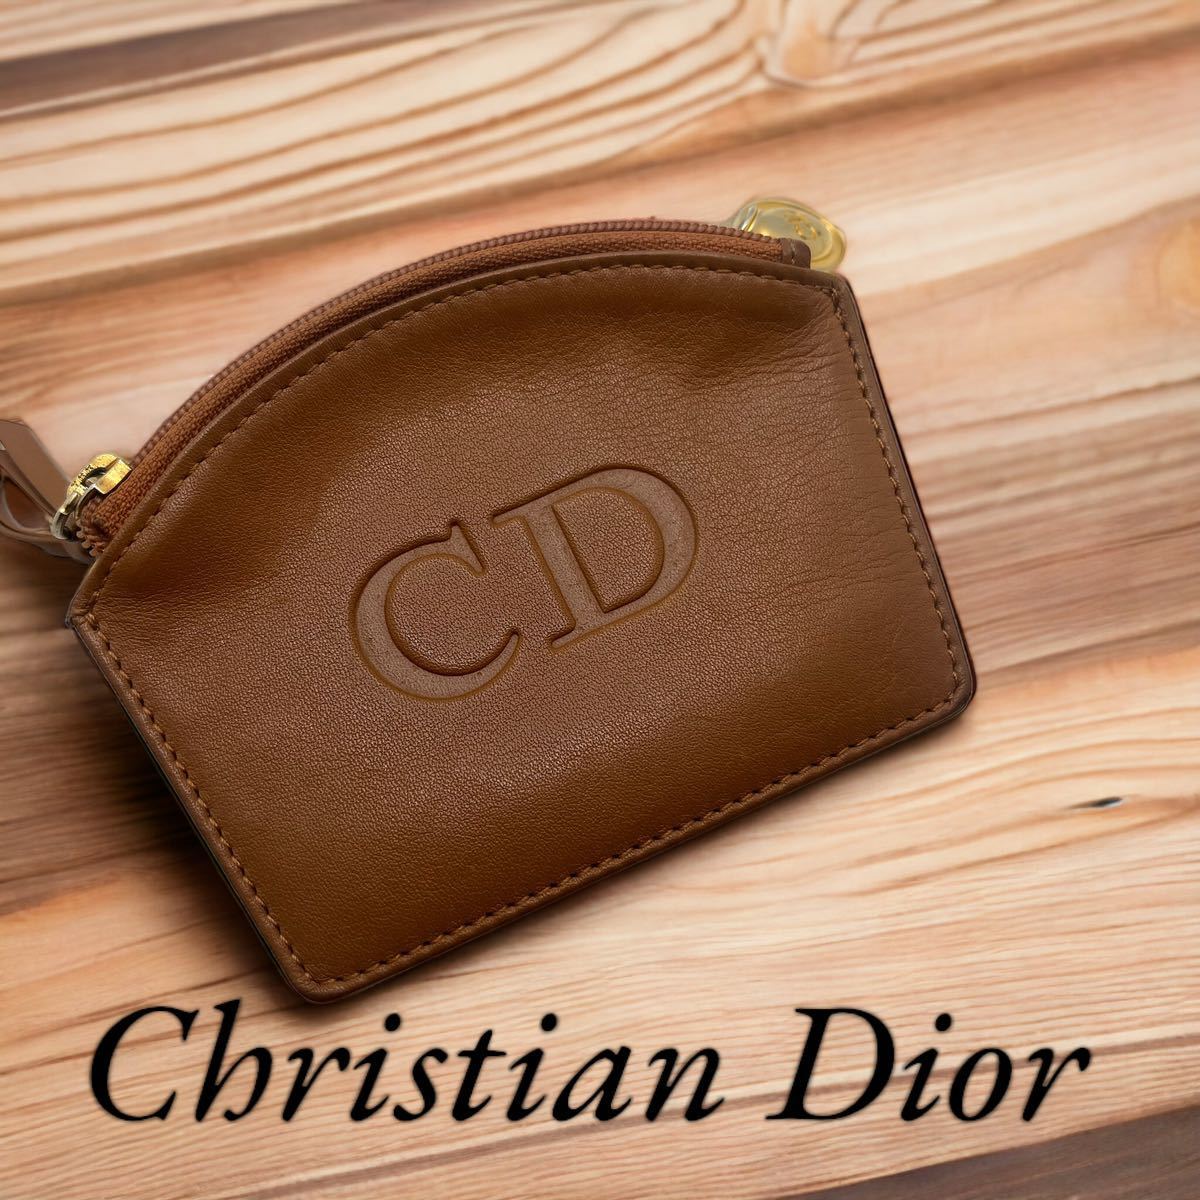 激安通販新作 Christian Dior コインケース クリスチャンディオール 女性用財布